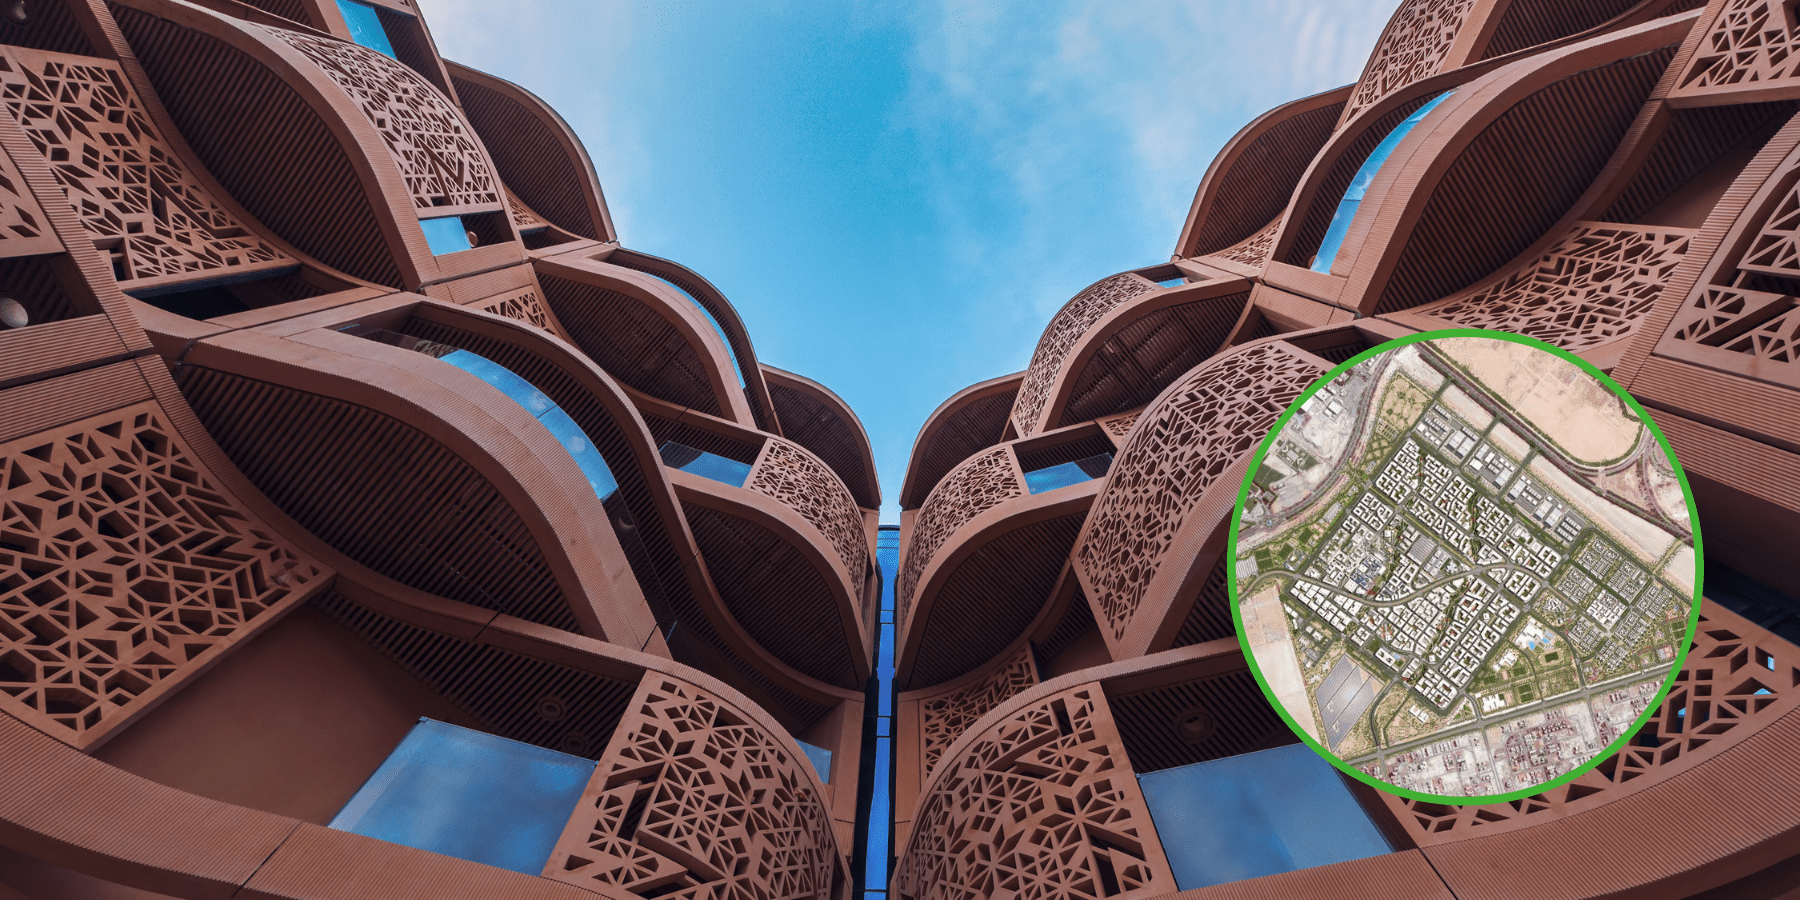 Masdar, pierwsze na świecie zrównoważone miasto, znajduje się rzut beretem od Abu Zabi, stolicy Zjednoczonych Emiratów Arabskich. Ta nietypowa inicjatywa tworzona jest już od ponad 15 lat. Na czym polega ten unikalny na światową skalę, w pełni ekologiczny projekt?